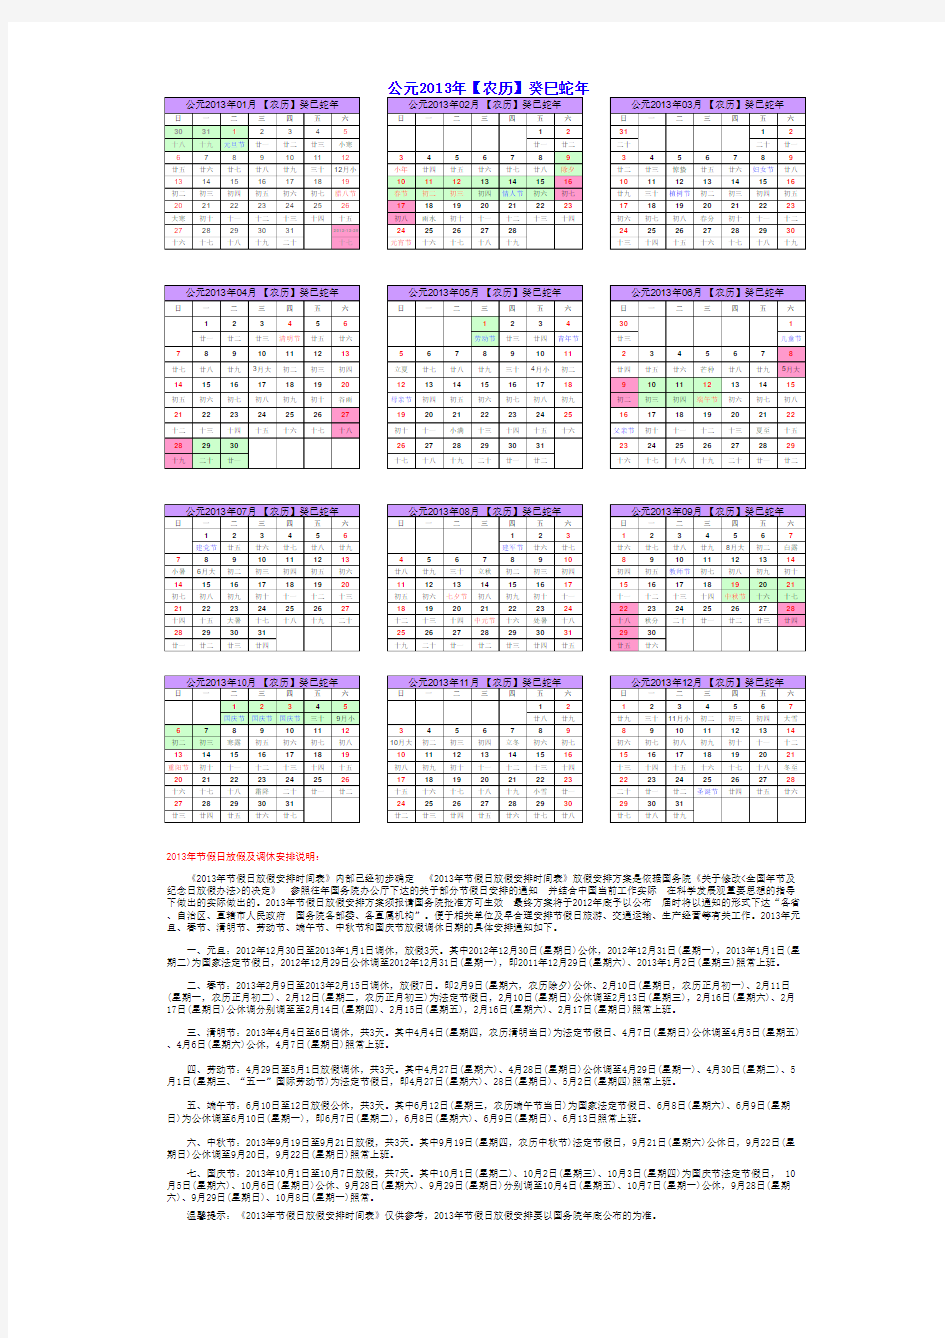 2013年日历(含节假日及调休安排)